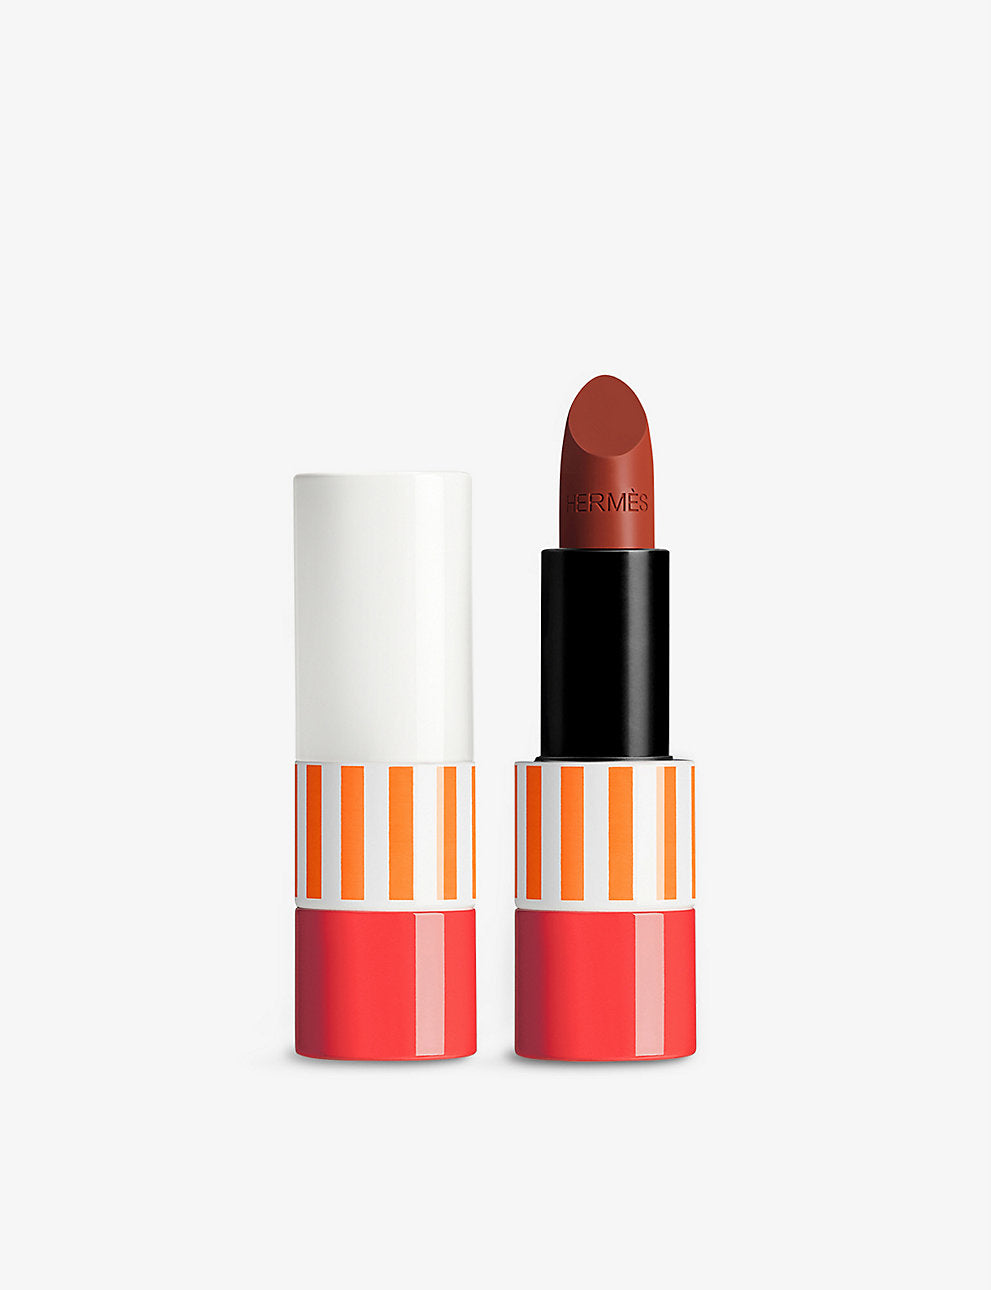 HERMES Rouge Hermès limited-edition sheer lipstick 3.5g, En caso de que aún no te hayas enterado